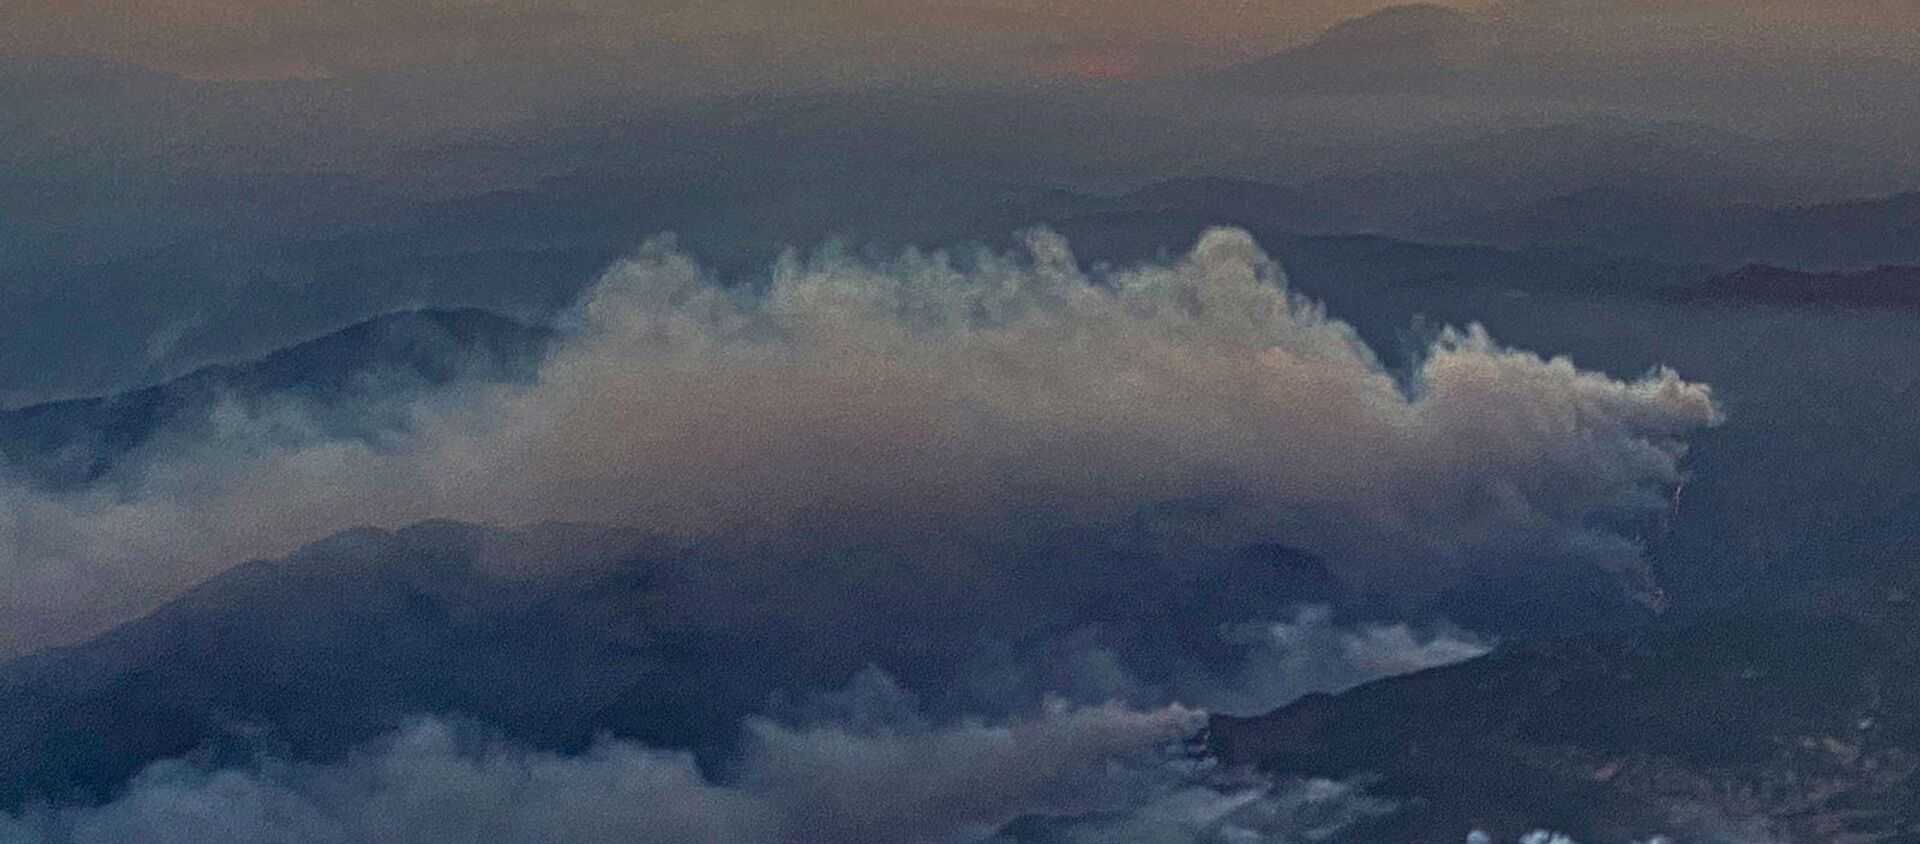 Kлубы дыма от лесных пожаров в районе Даламан на юге Турции - Sputnik Армения, 1920, 08.08.2021